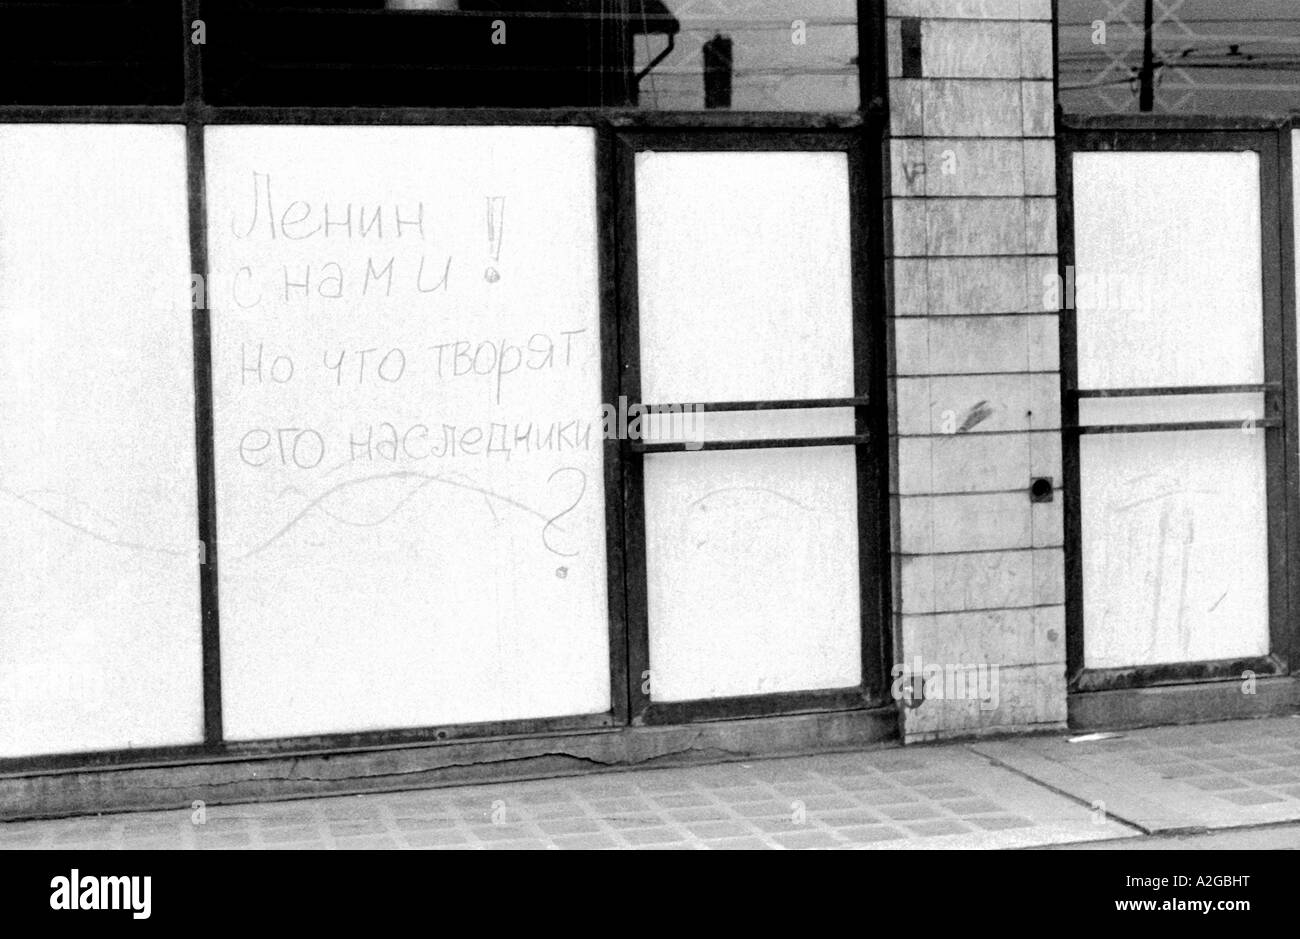 Soviet occupation in Czechoslovakia, 1968 Stock Photo